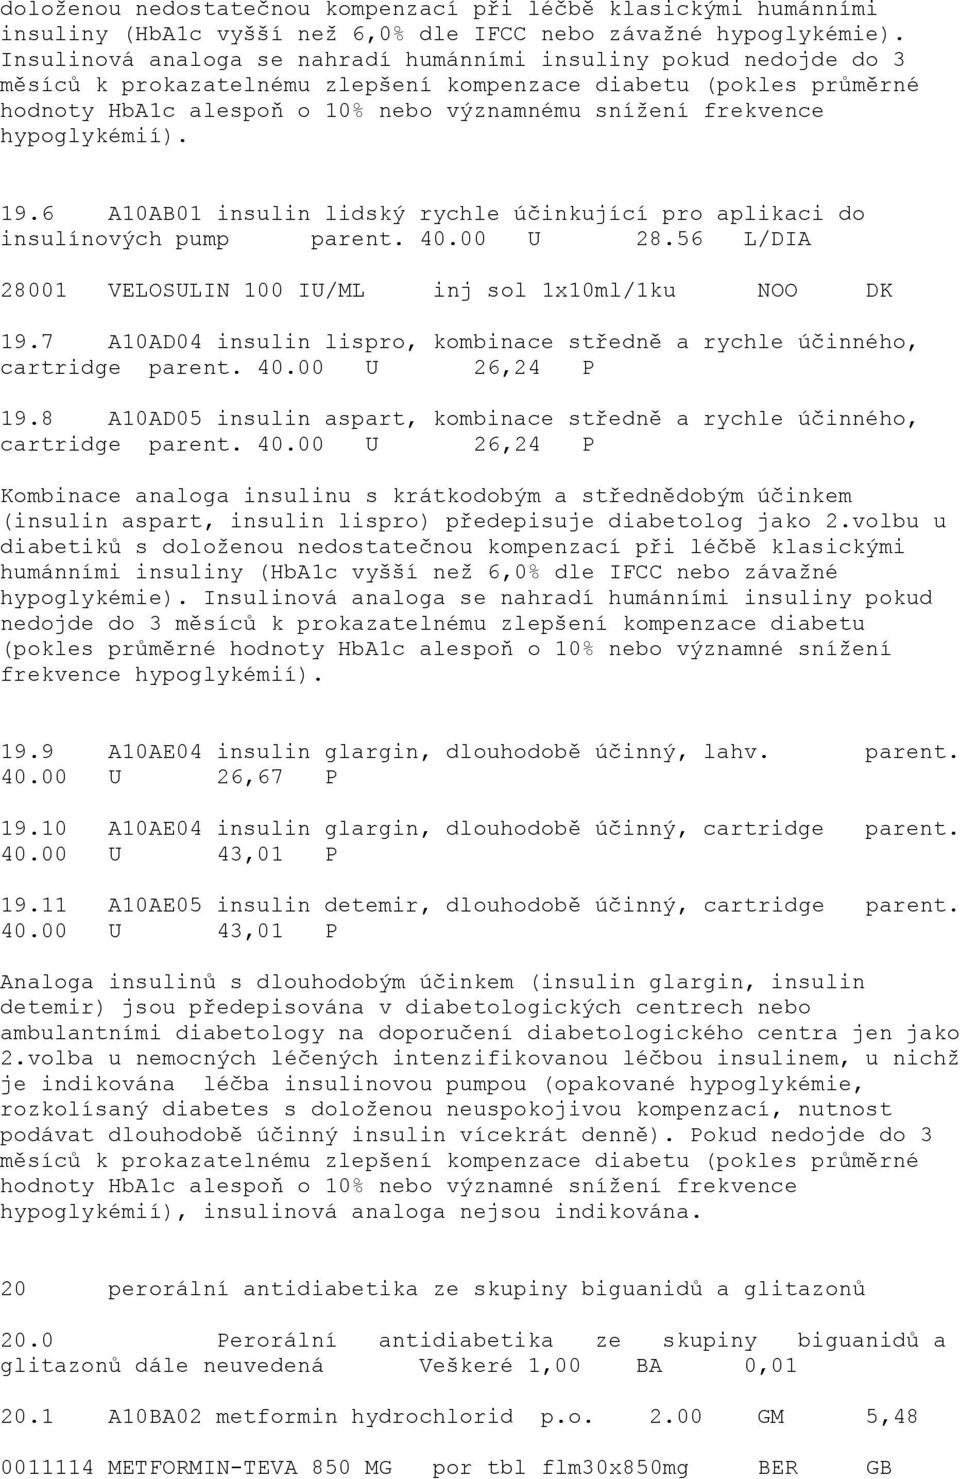 hypoglykémií). 19.6 A10AB01 insulin lidský rychle účinkující pro aplikaci do insulínových pump parent. 40.00 U 28.56 L/DIA 28001 VELOSULIN 100 IU/ML inj sol 1x10ml/1ku NOO DK 19.